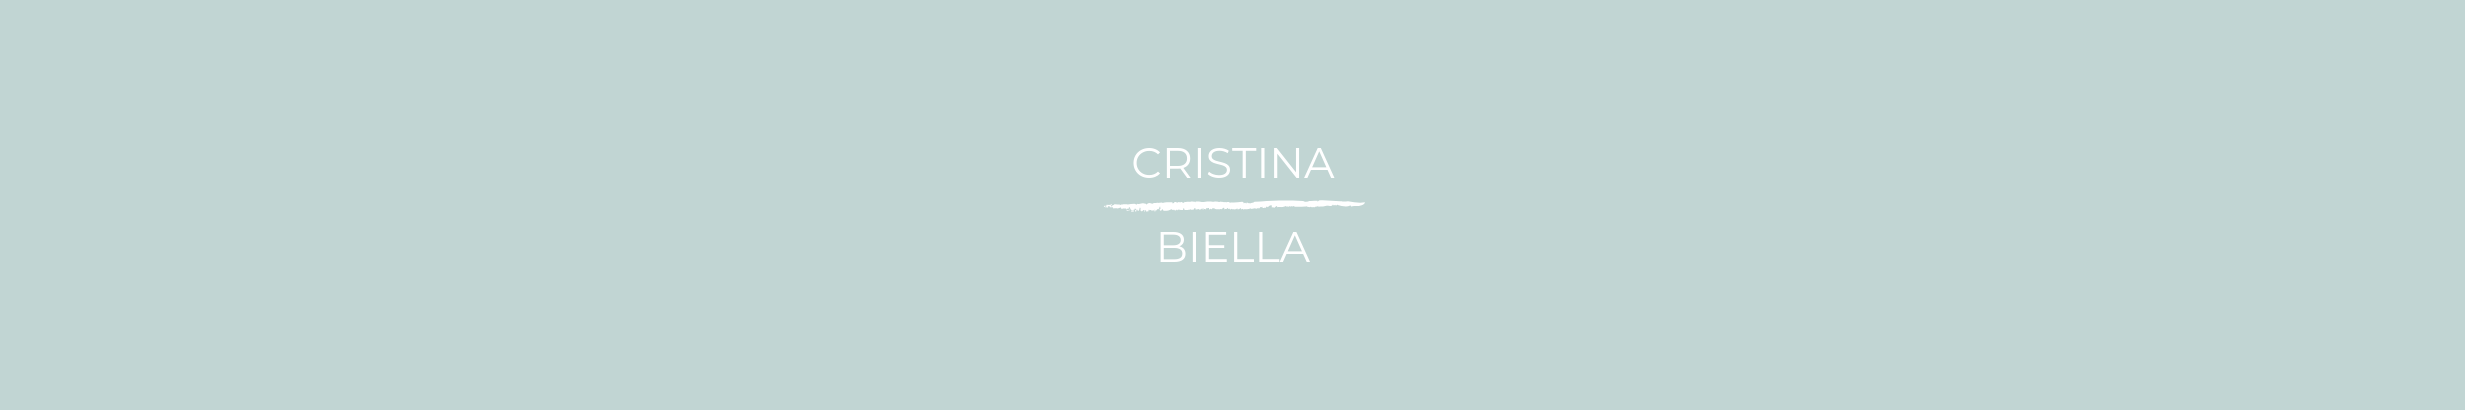 Cristina Biella's profile banner